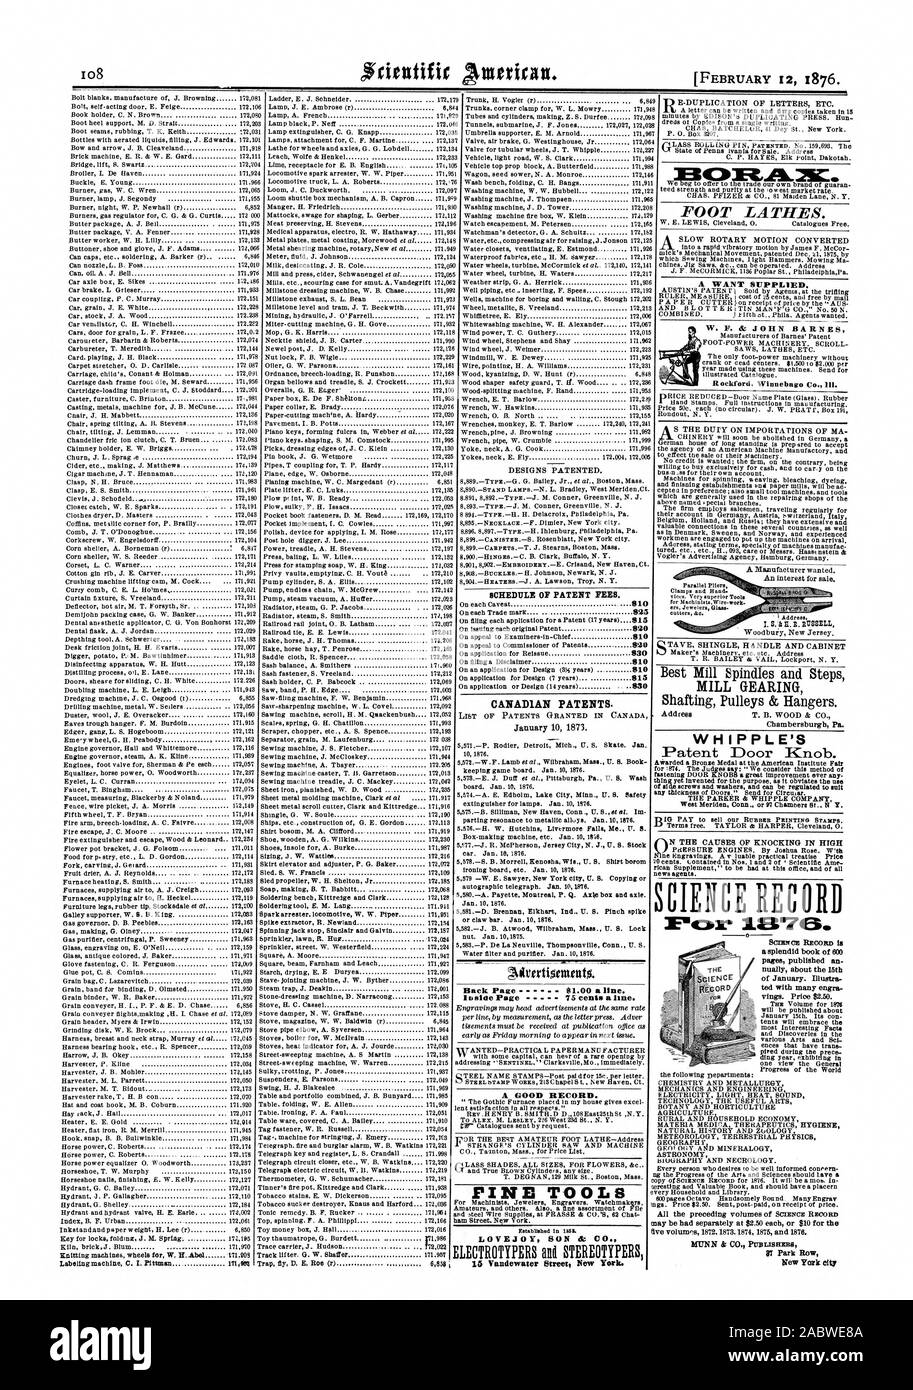 El calendario de las tasas de patentes. Las patentes canadienses. Volver a la página anterior 81.00 una línea. Dentro de la página 75 centavos una línea. Un buen historial. Herramientas de pino hijo LOVEJOY CO. en tornos de pie. Un quiere suministrado. WHIPPLE CIENCIA D MUNN & CO. Prmusexes St Park Row New York City MILL GEARING Chambersburgh Pa. 27, Scientific American, 1876-02-12 Foto de stock